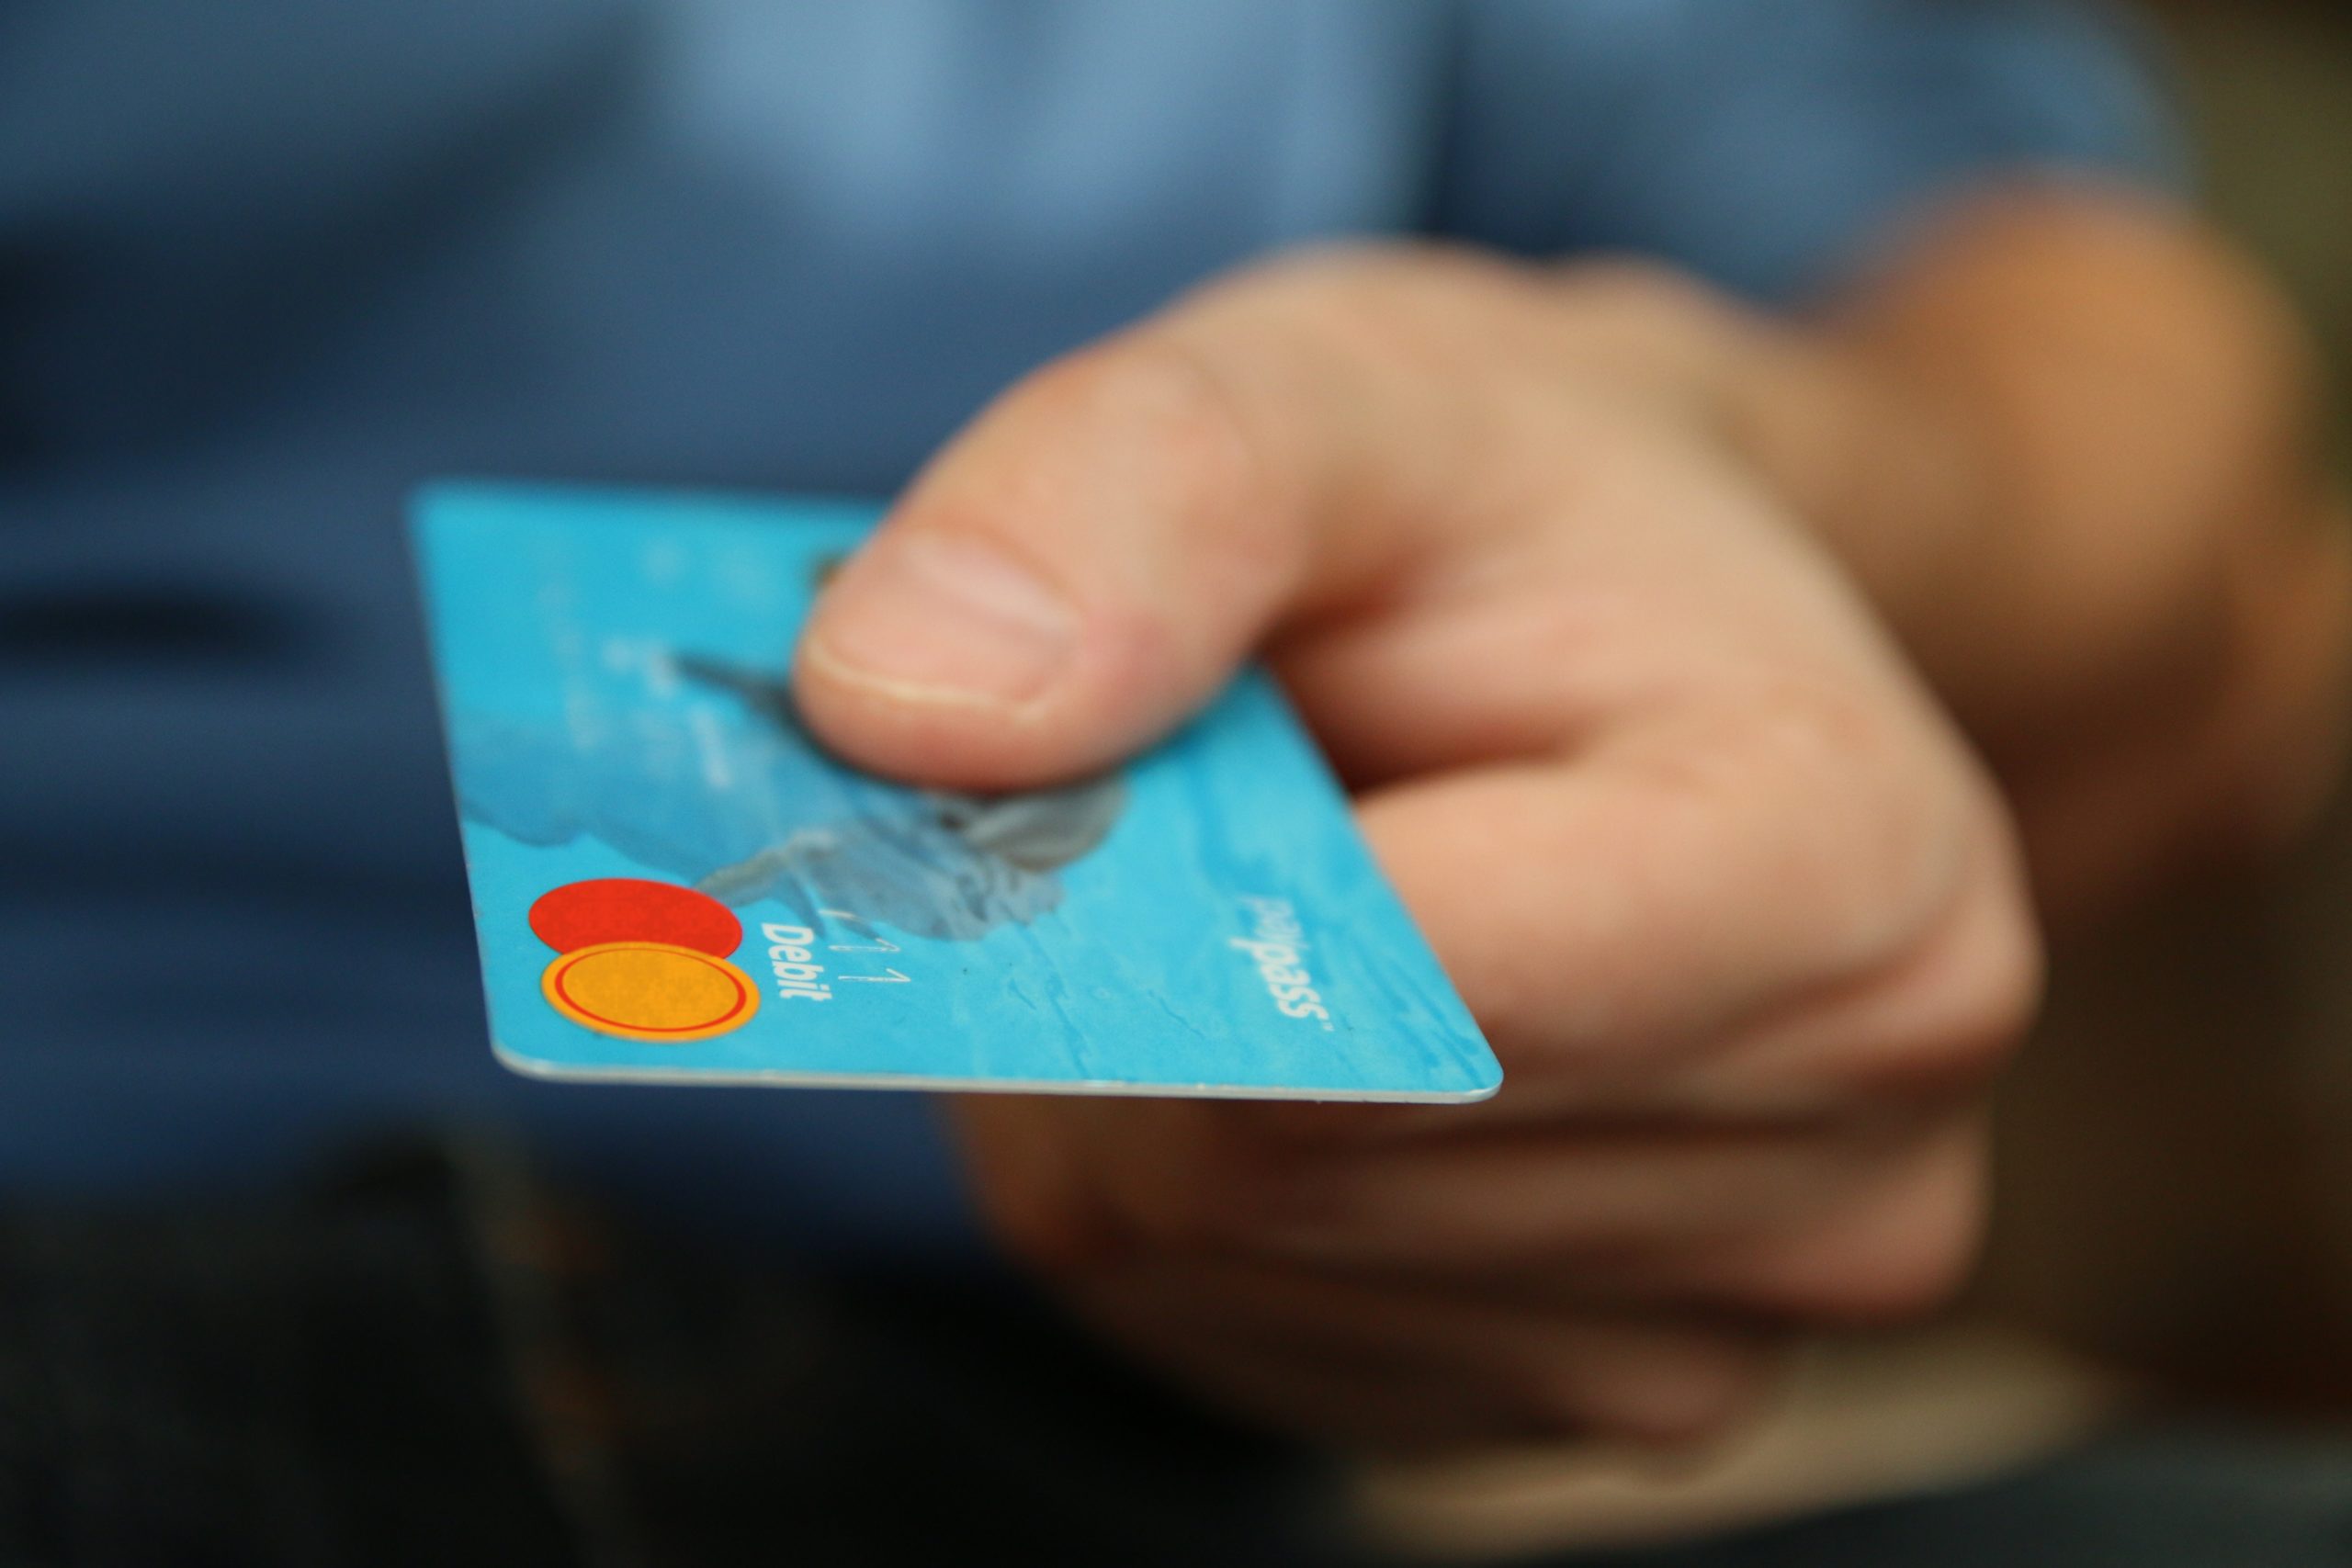 Mão segurando um cartão de crédito azul.